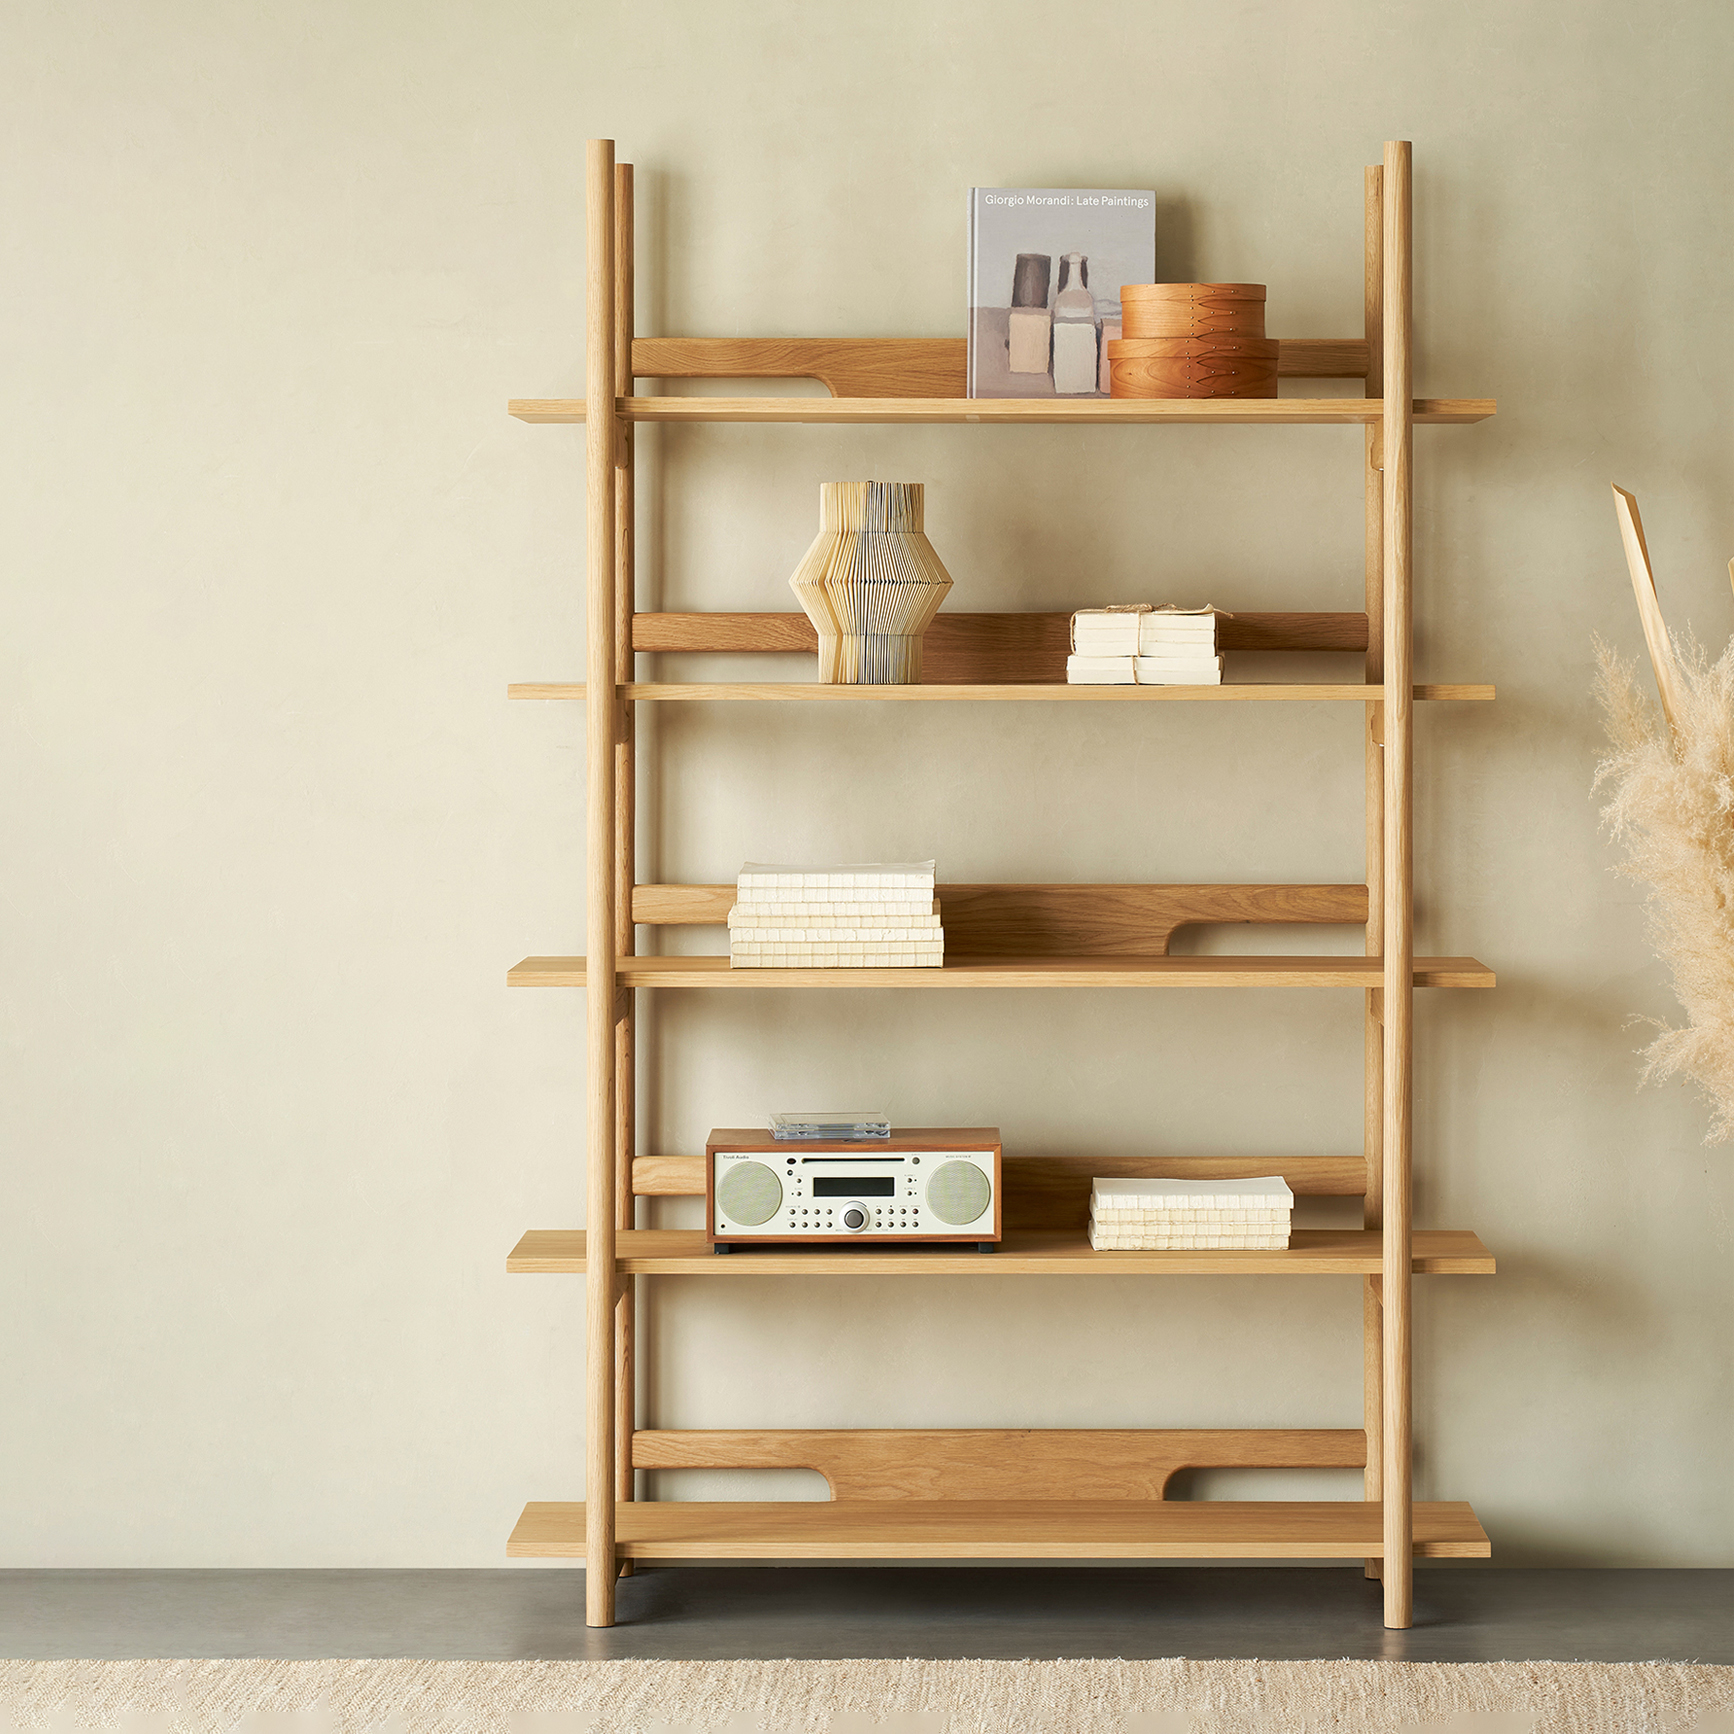 Hiros Oak Bookcase Display Shelf Office Bookshelf 47.2"